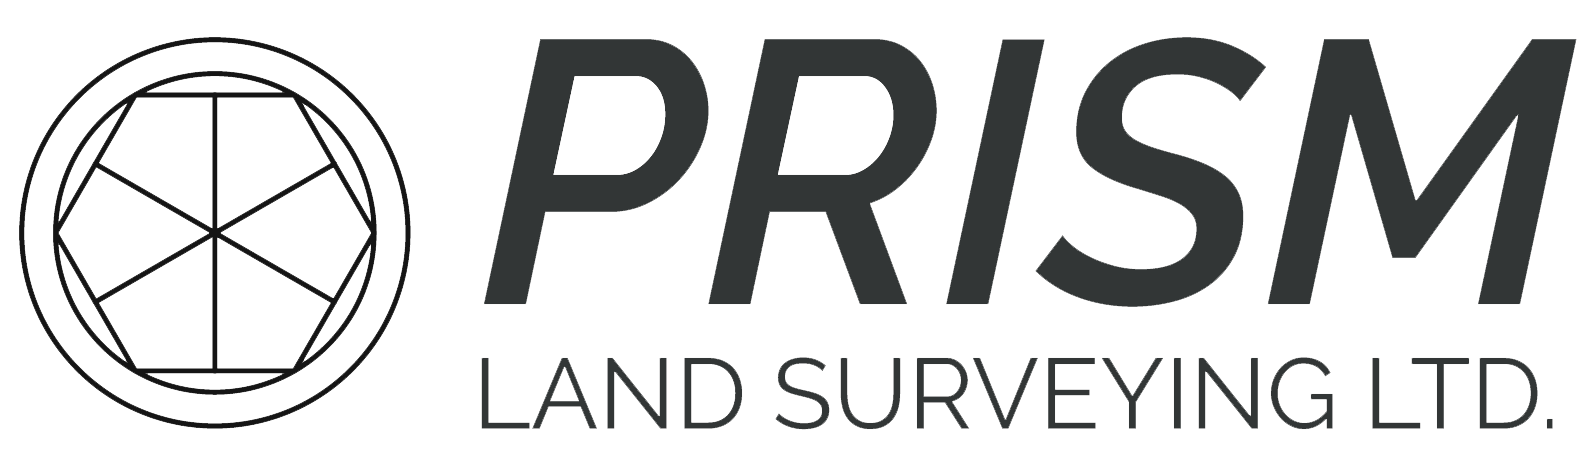 Prism land surveying logo, Paradise West Website Services client